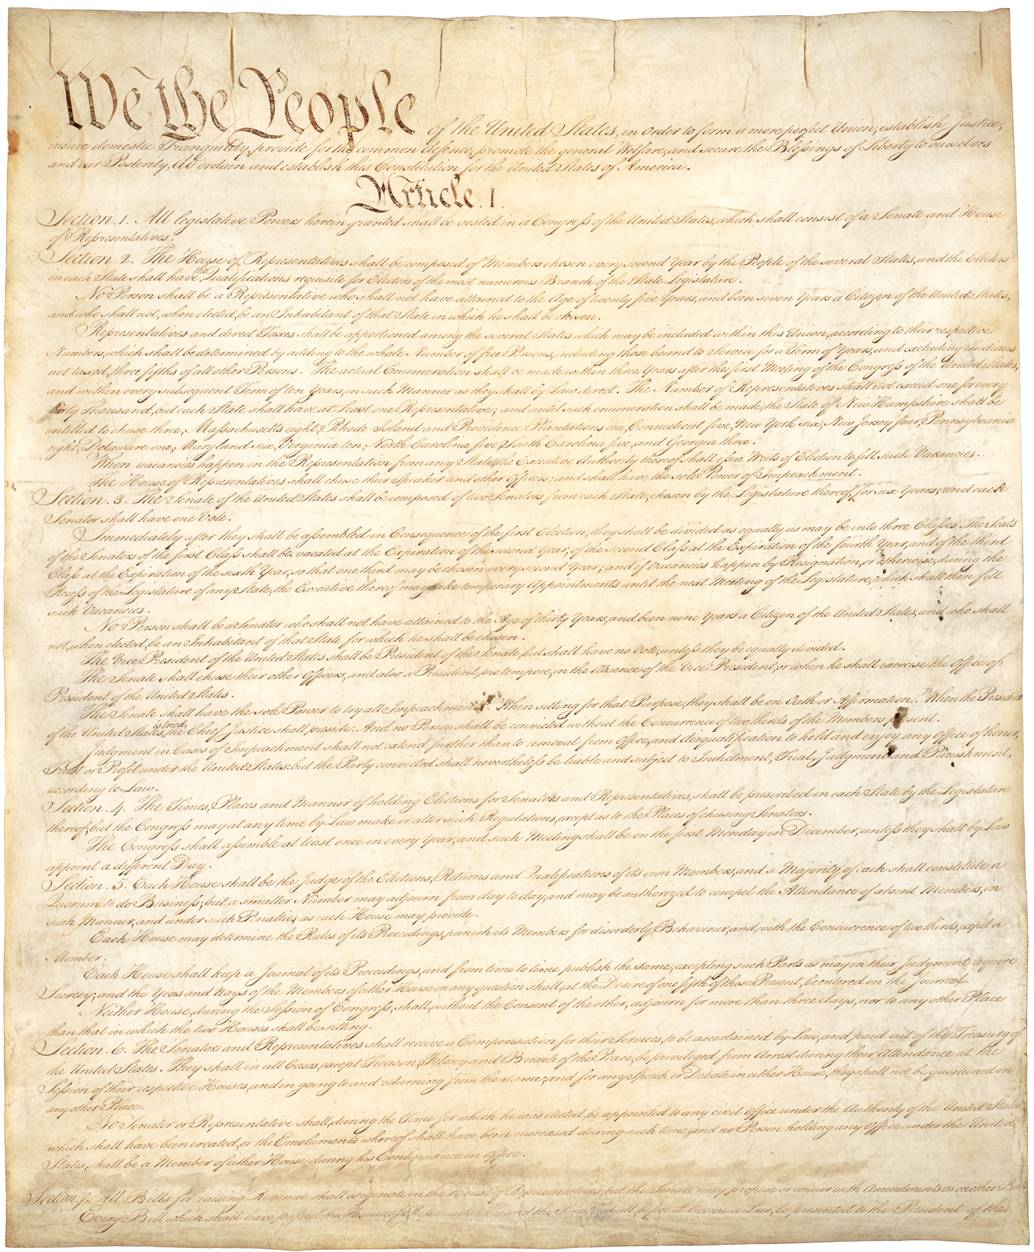 конституция сша